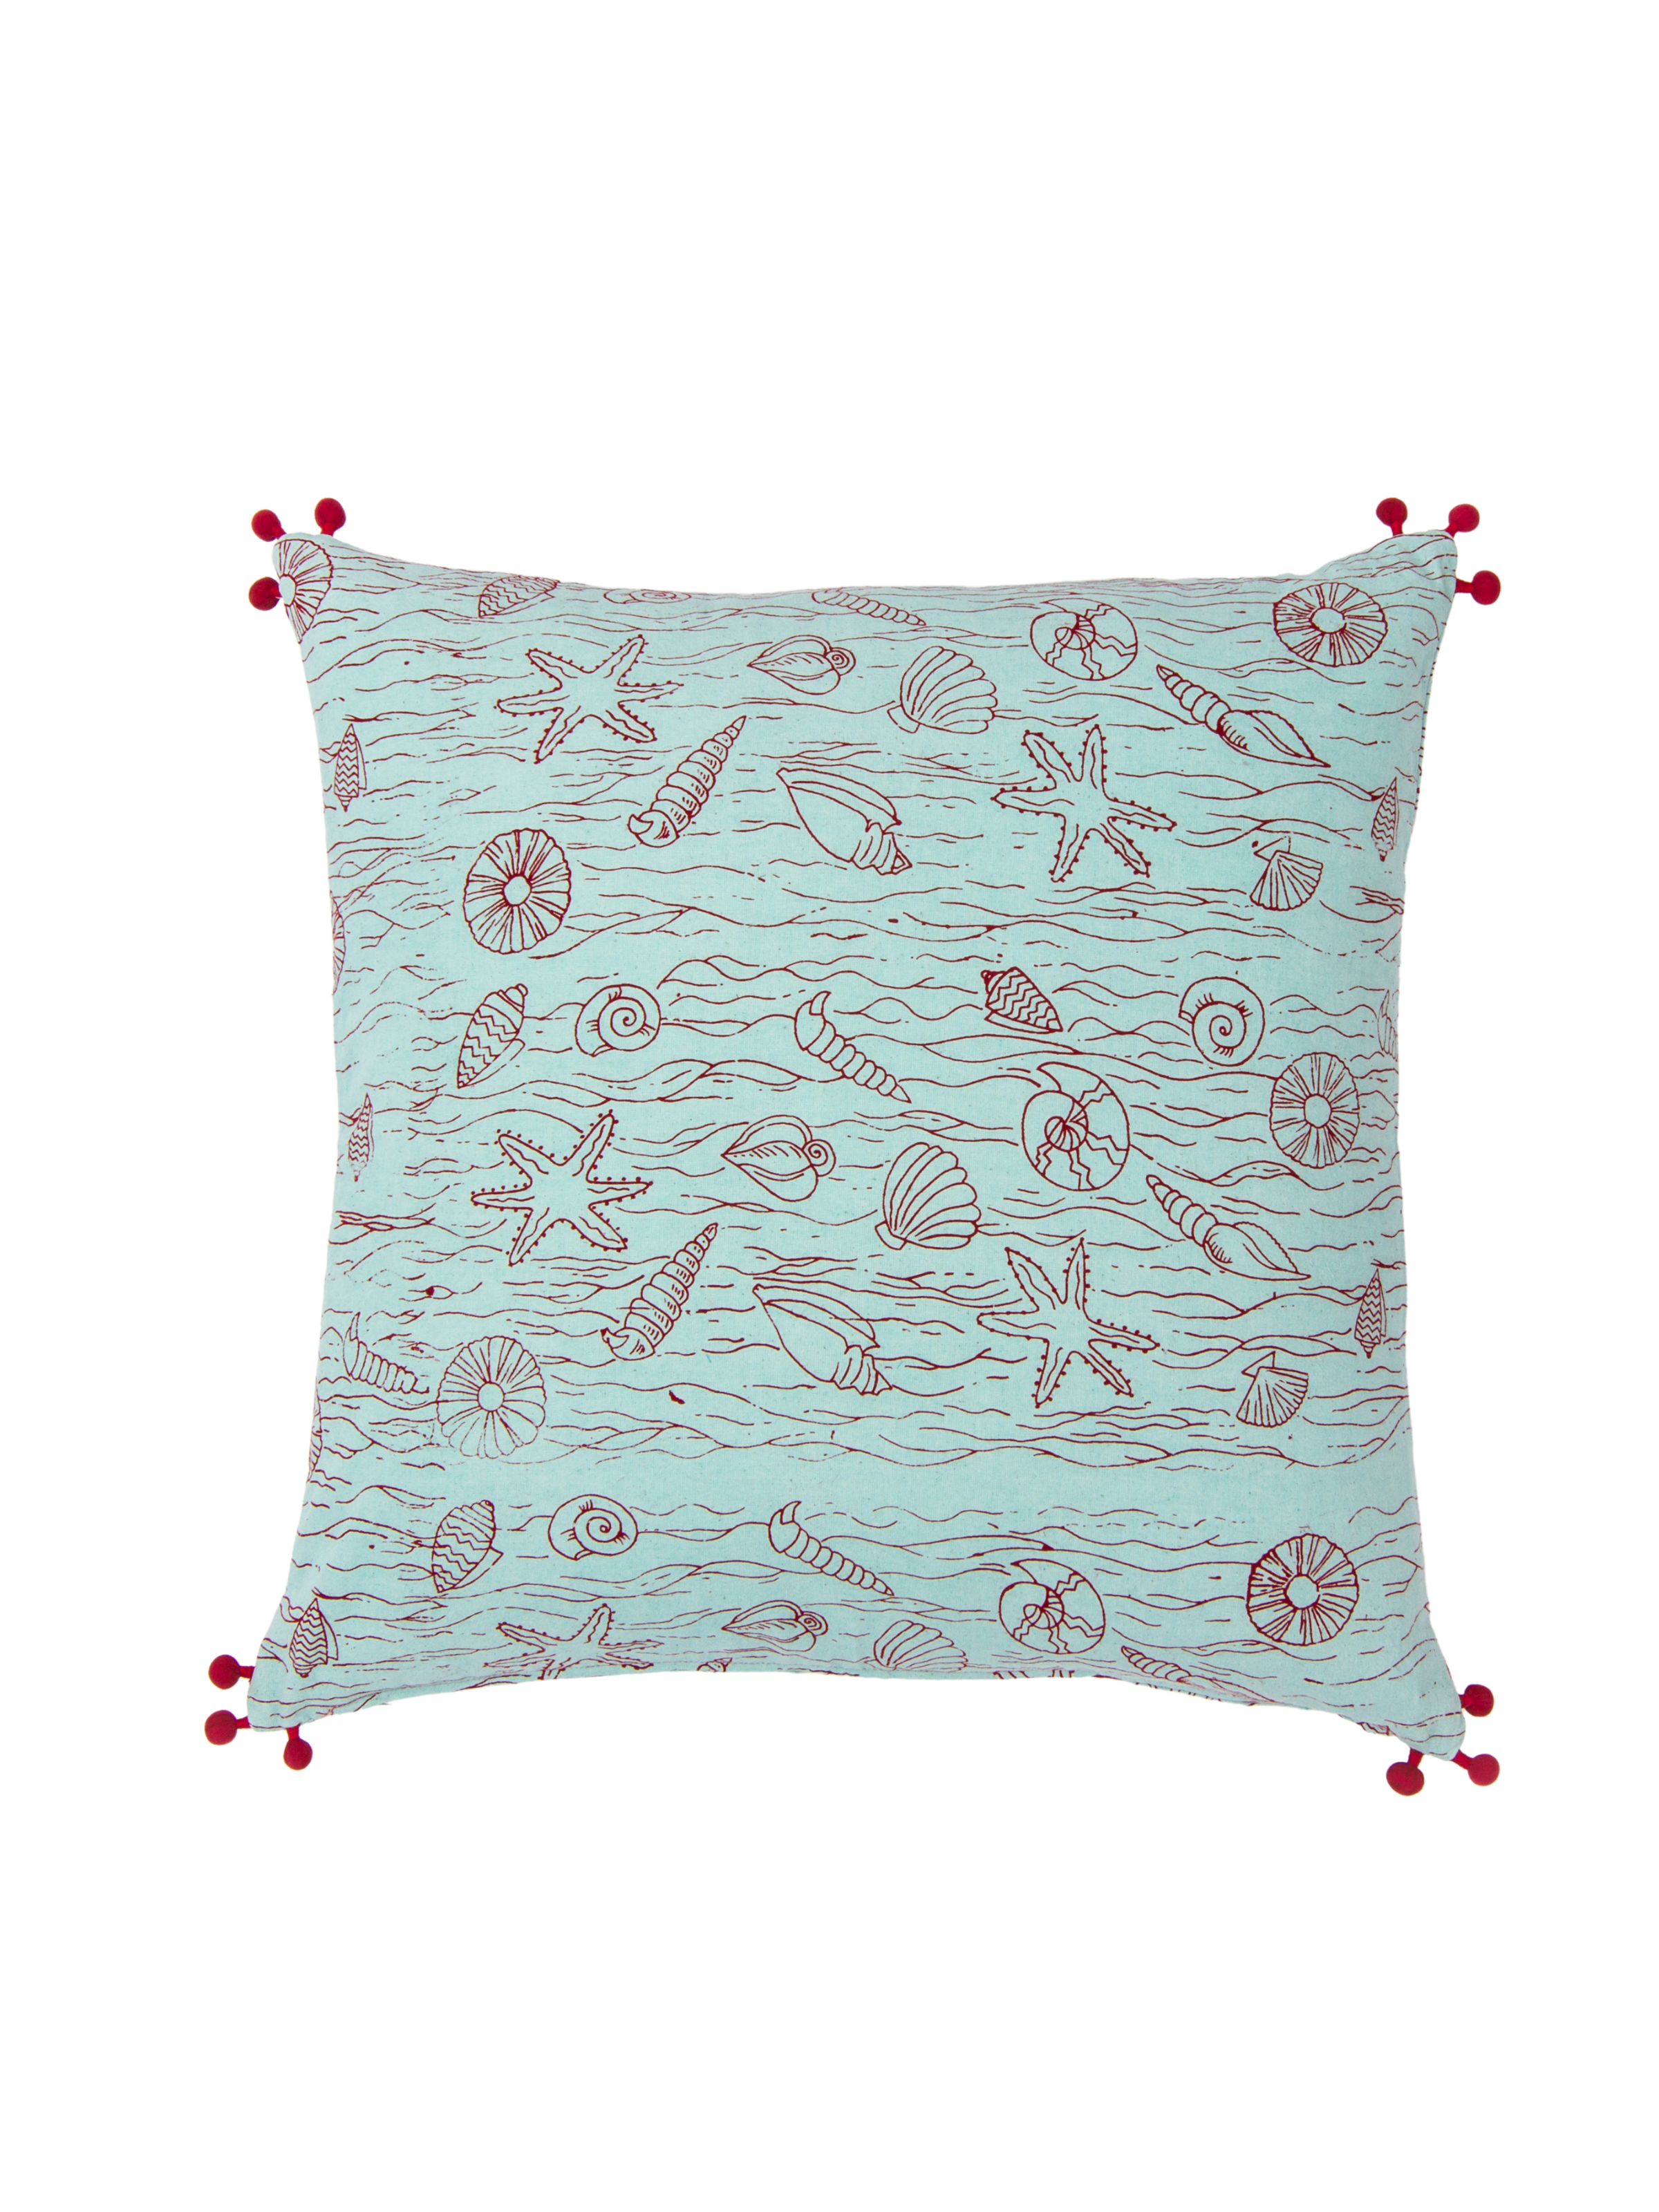 Seashell Aqua Pillow Cover With Pom-Poms